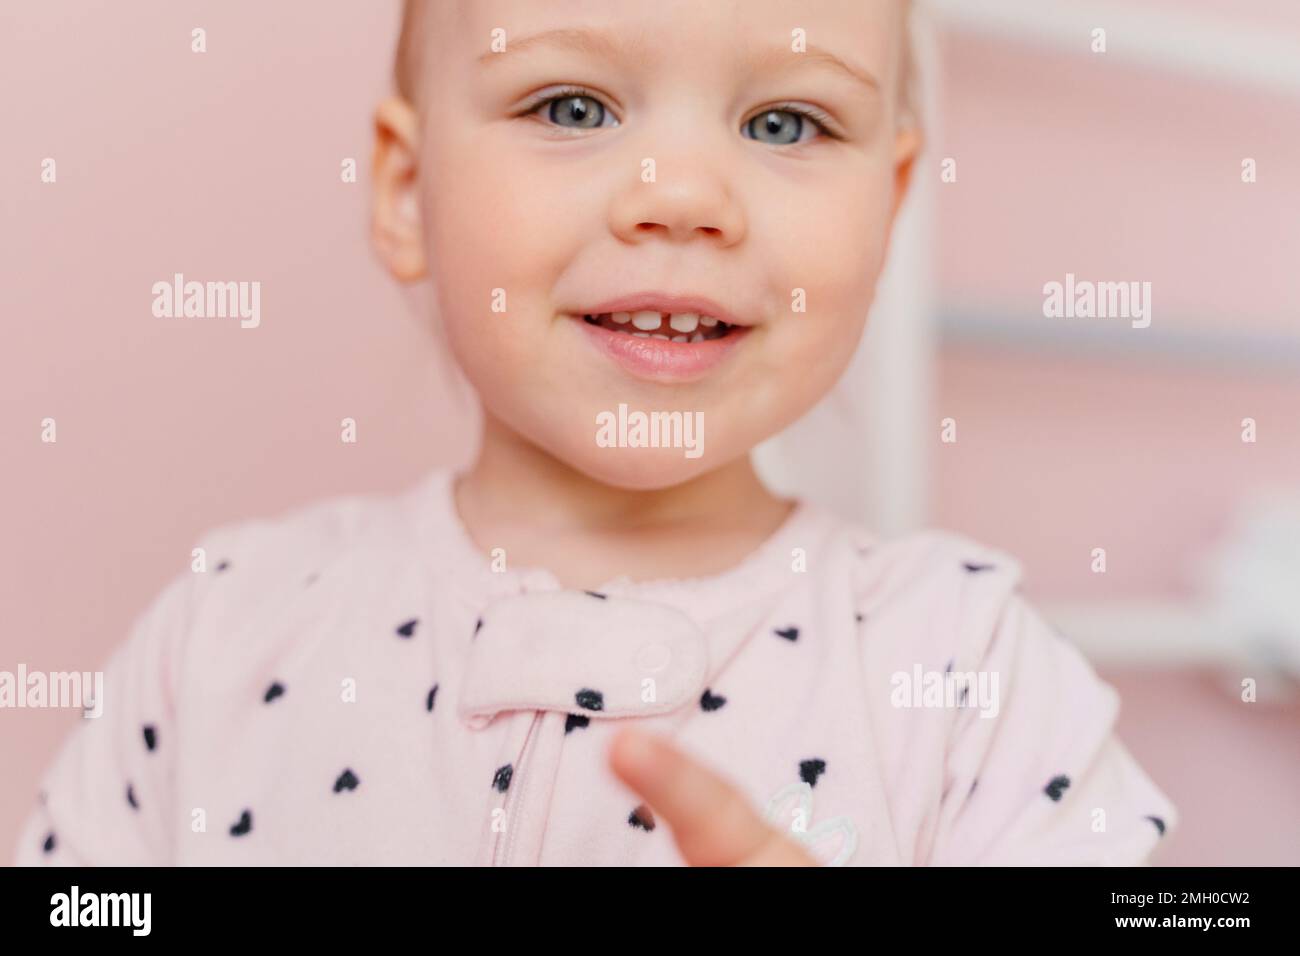 Portrait en gros plan d'une petite fille de race blanche en pyjama rose clair dans une chambre rose. Yeux gris, sourire avec les dents. Banque D'Images